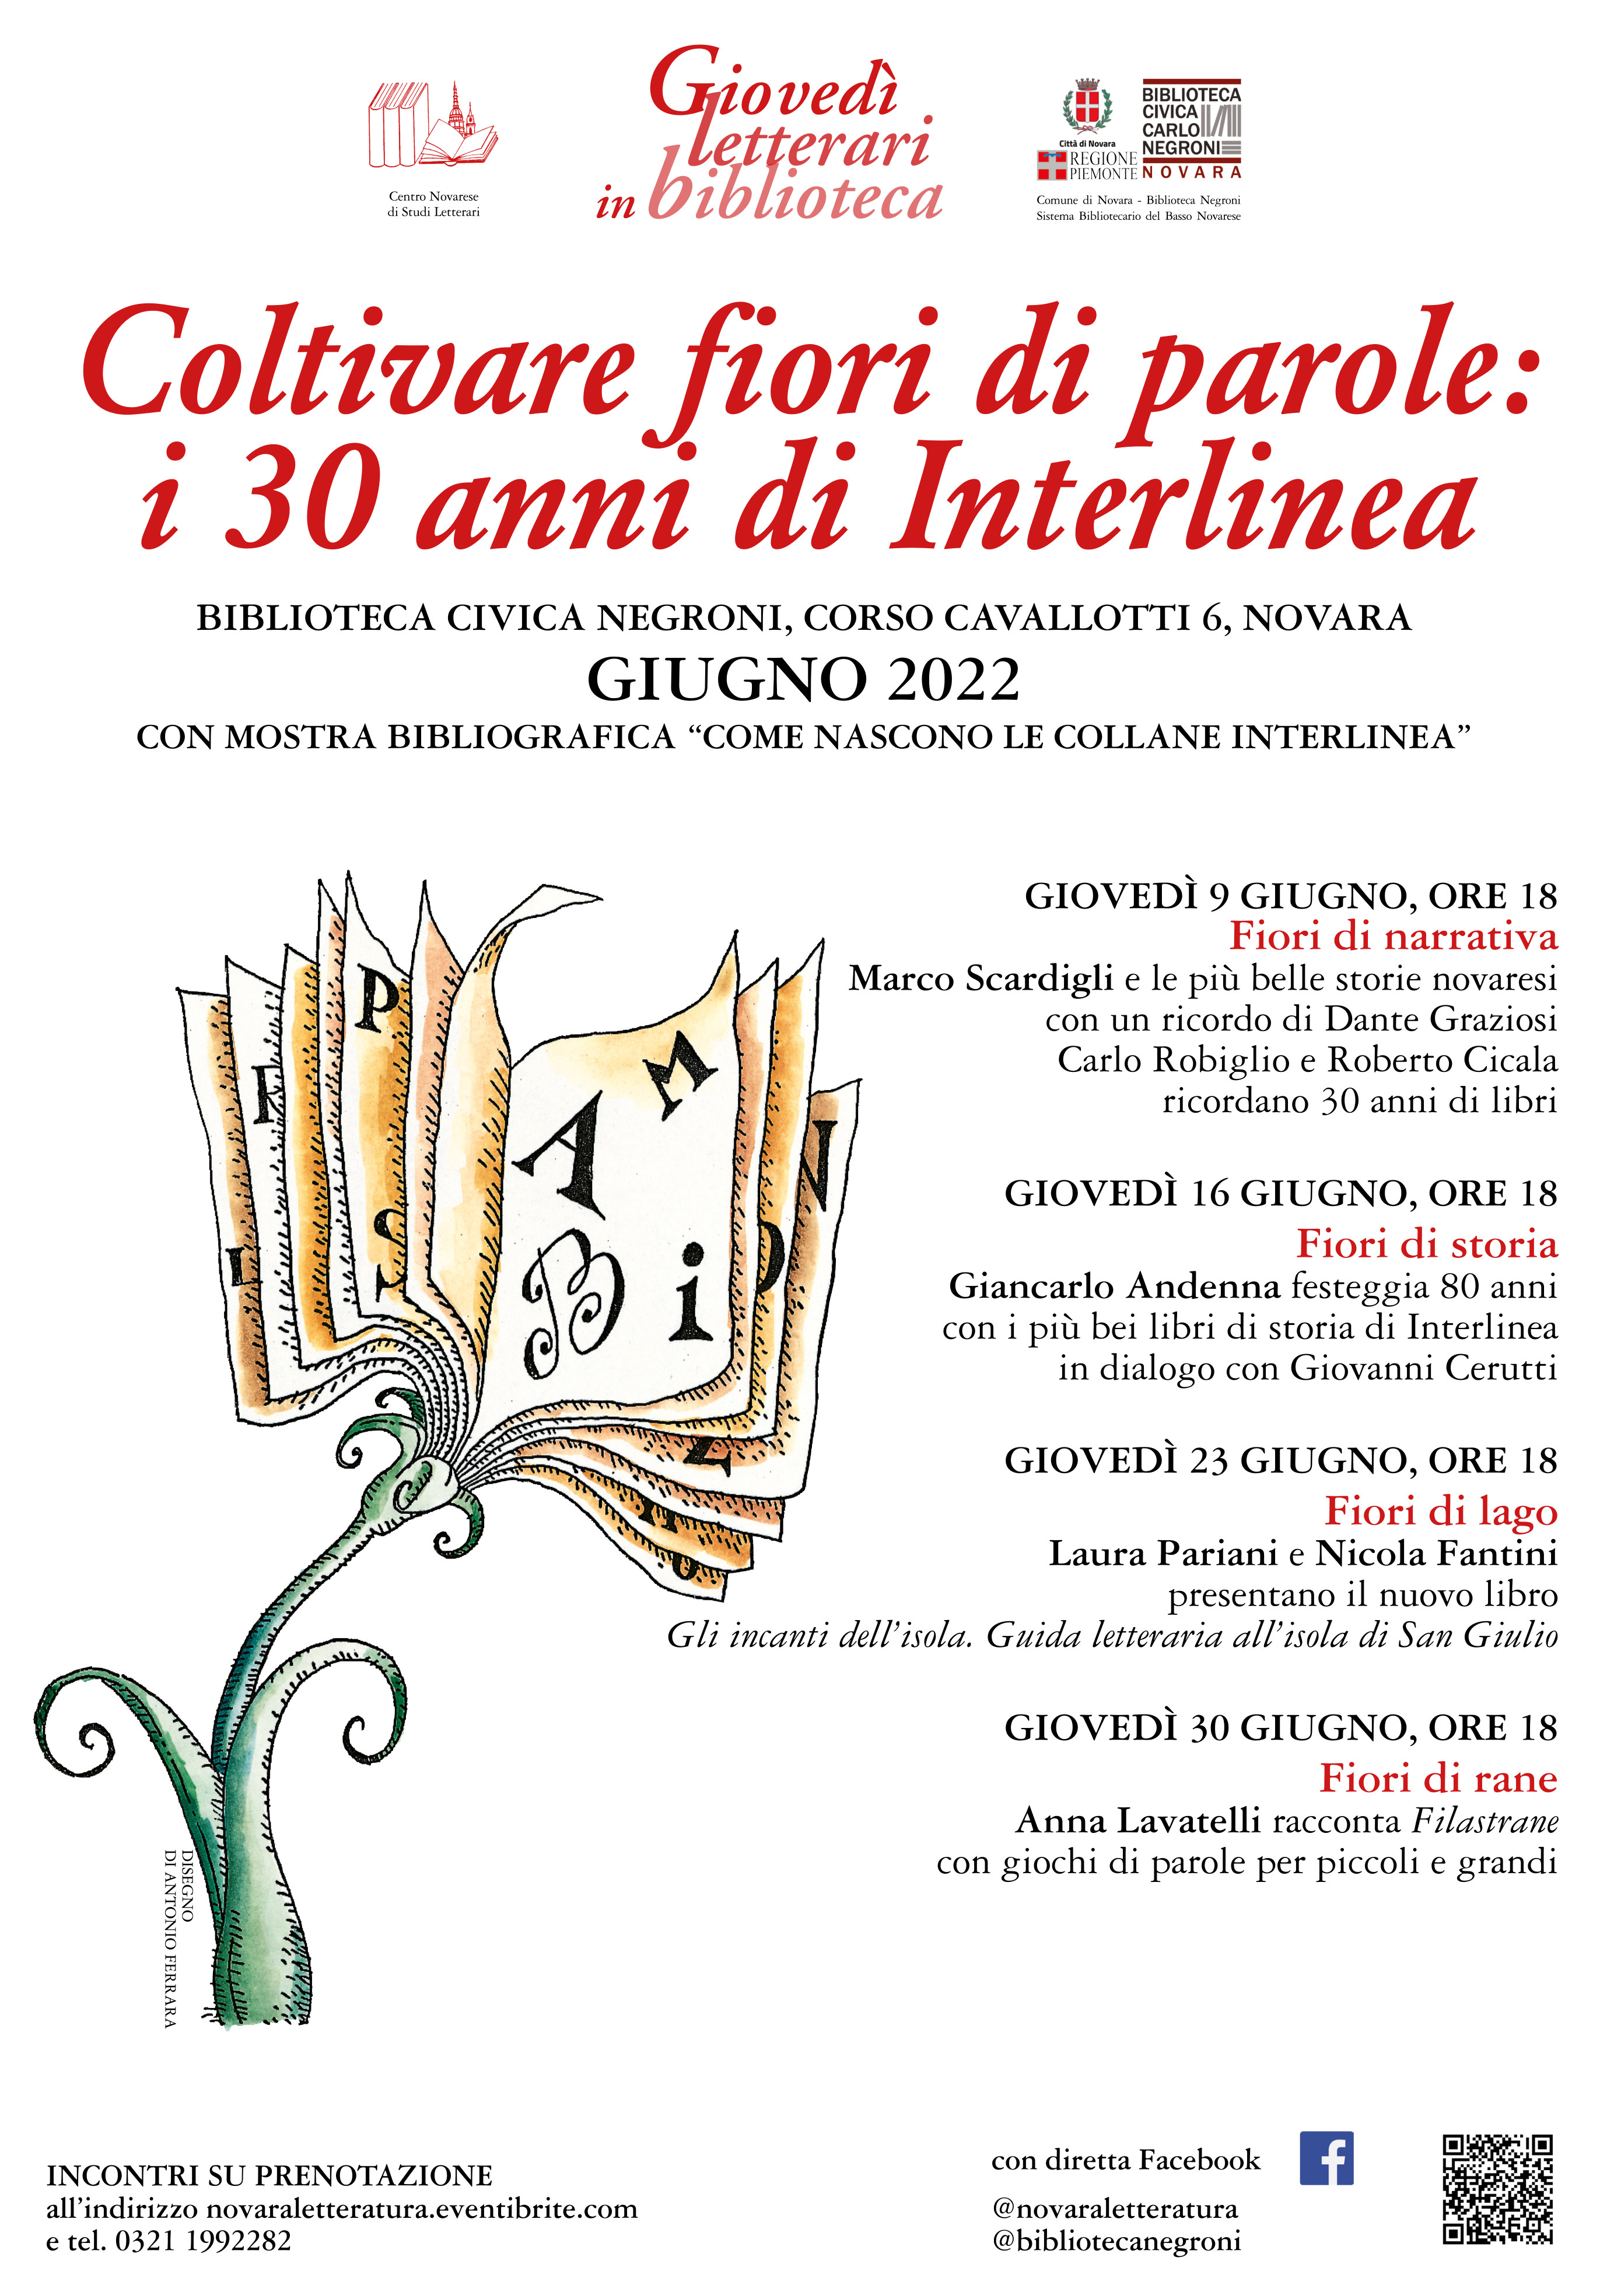 Gioved-letterari-GIUGNO 2022 30 Interlinea